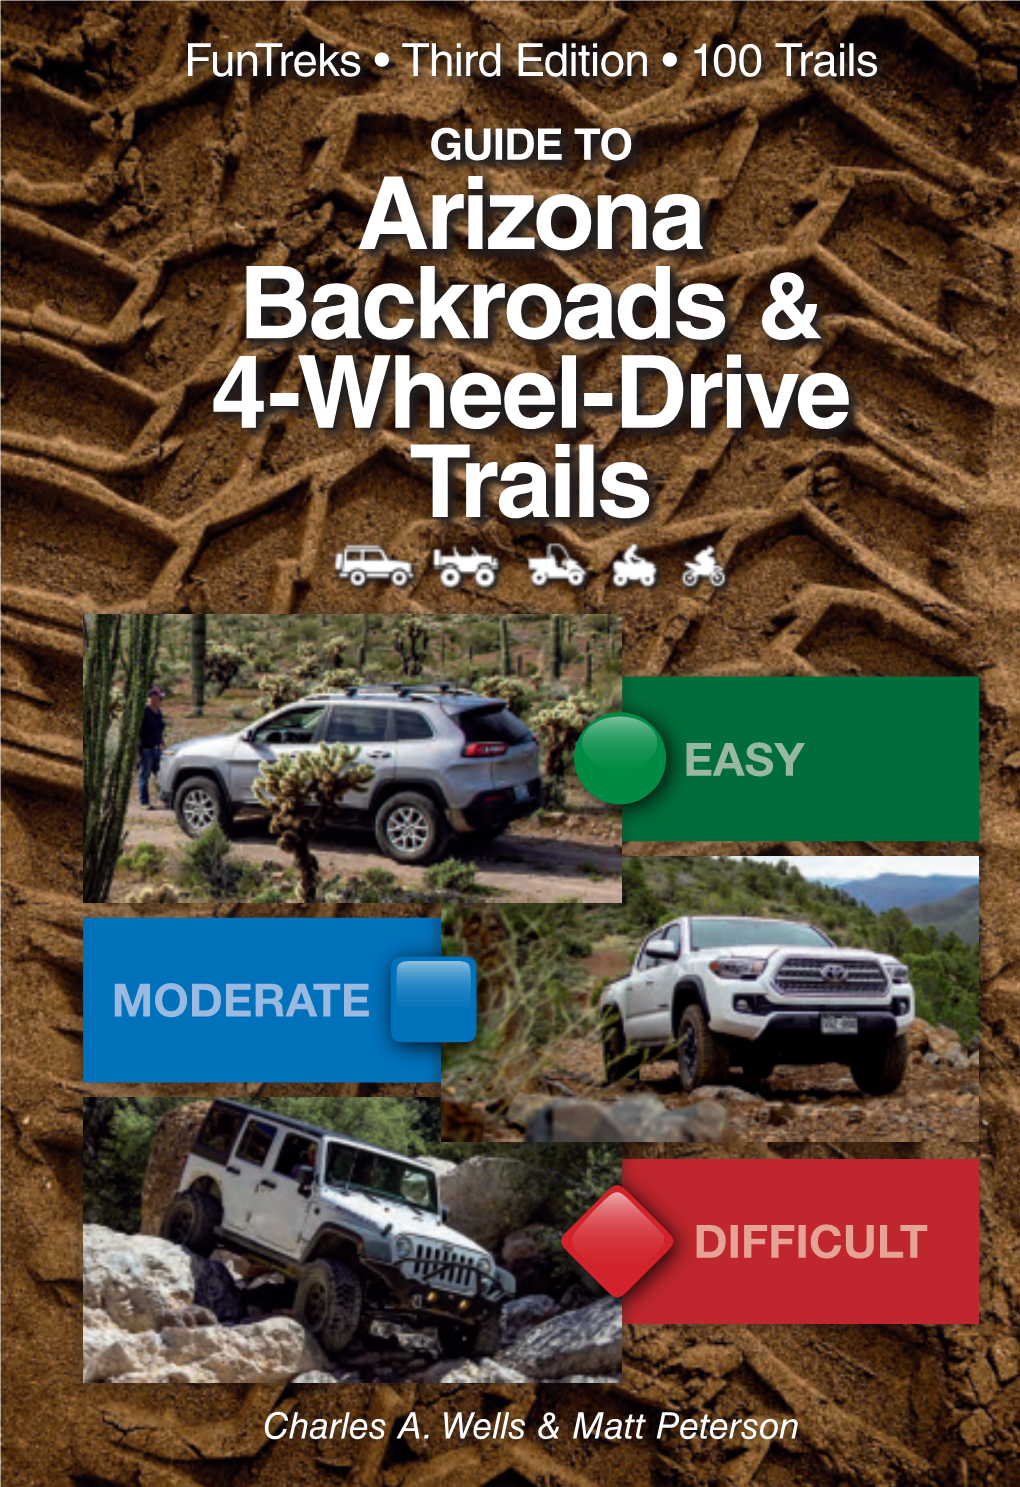 Arizona Backroads & 4-Wheel-Drive Trails